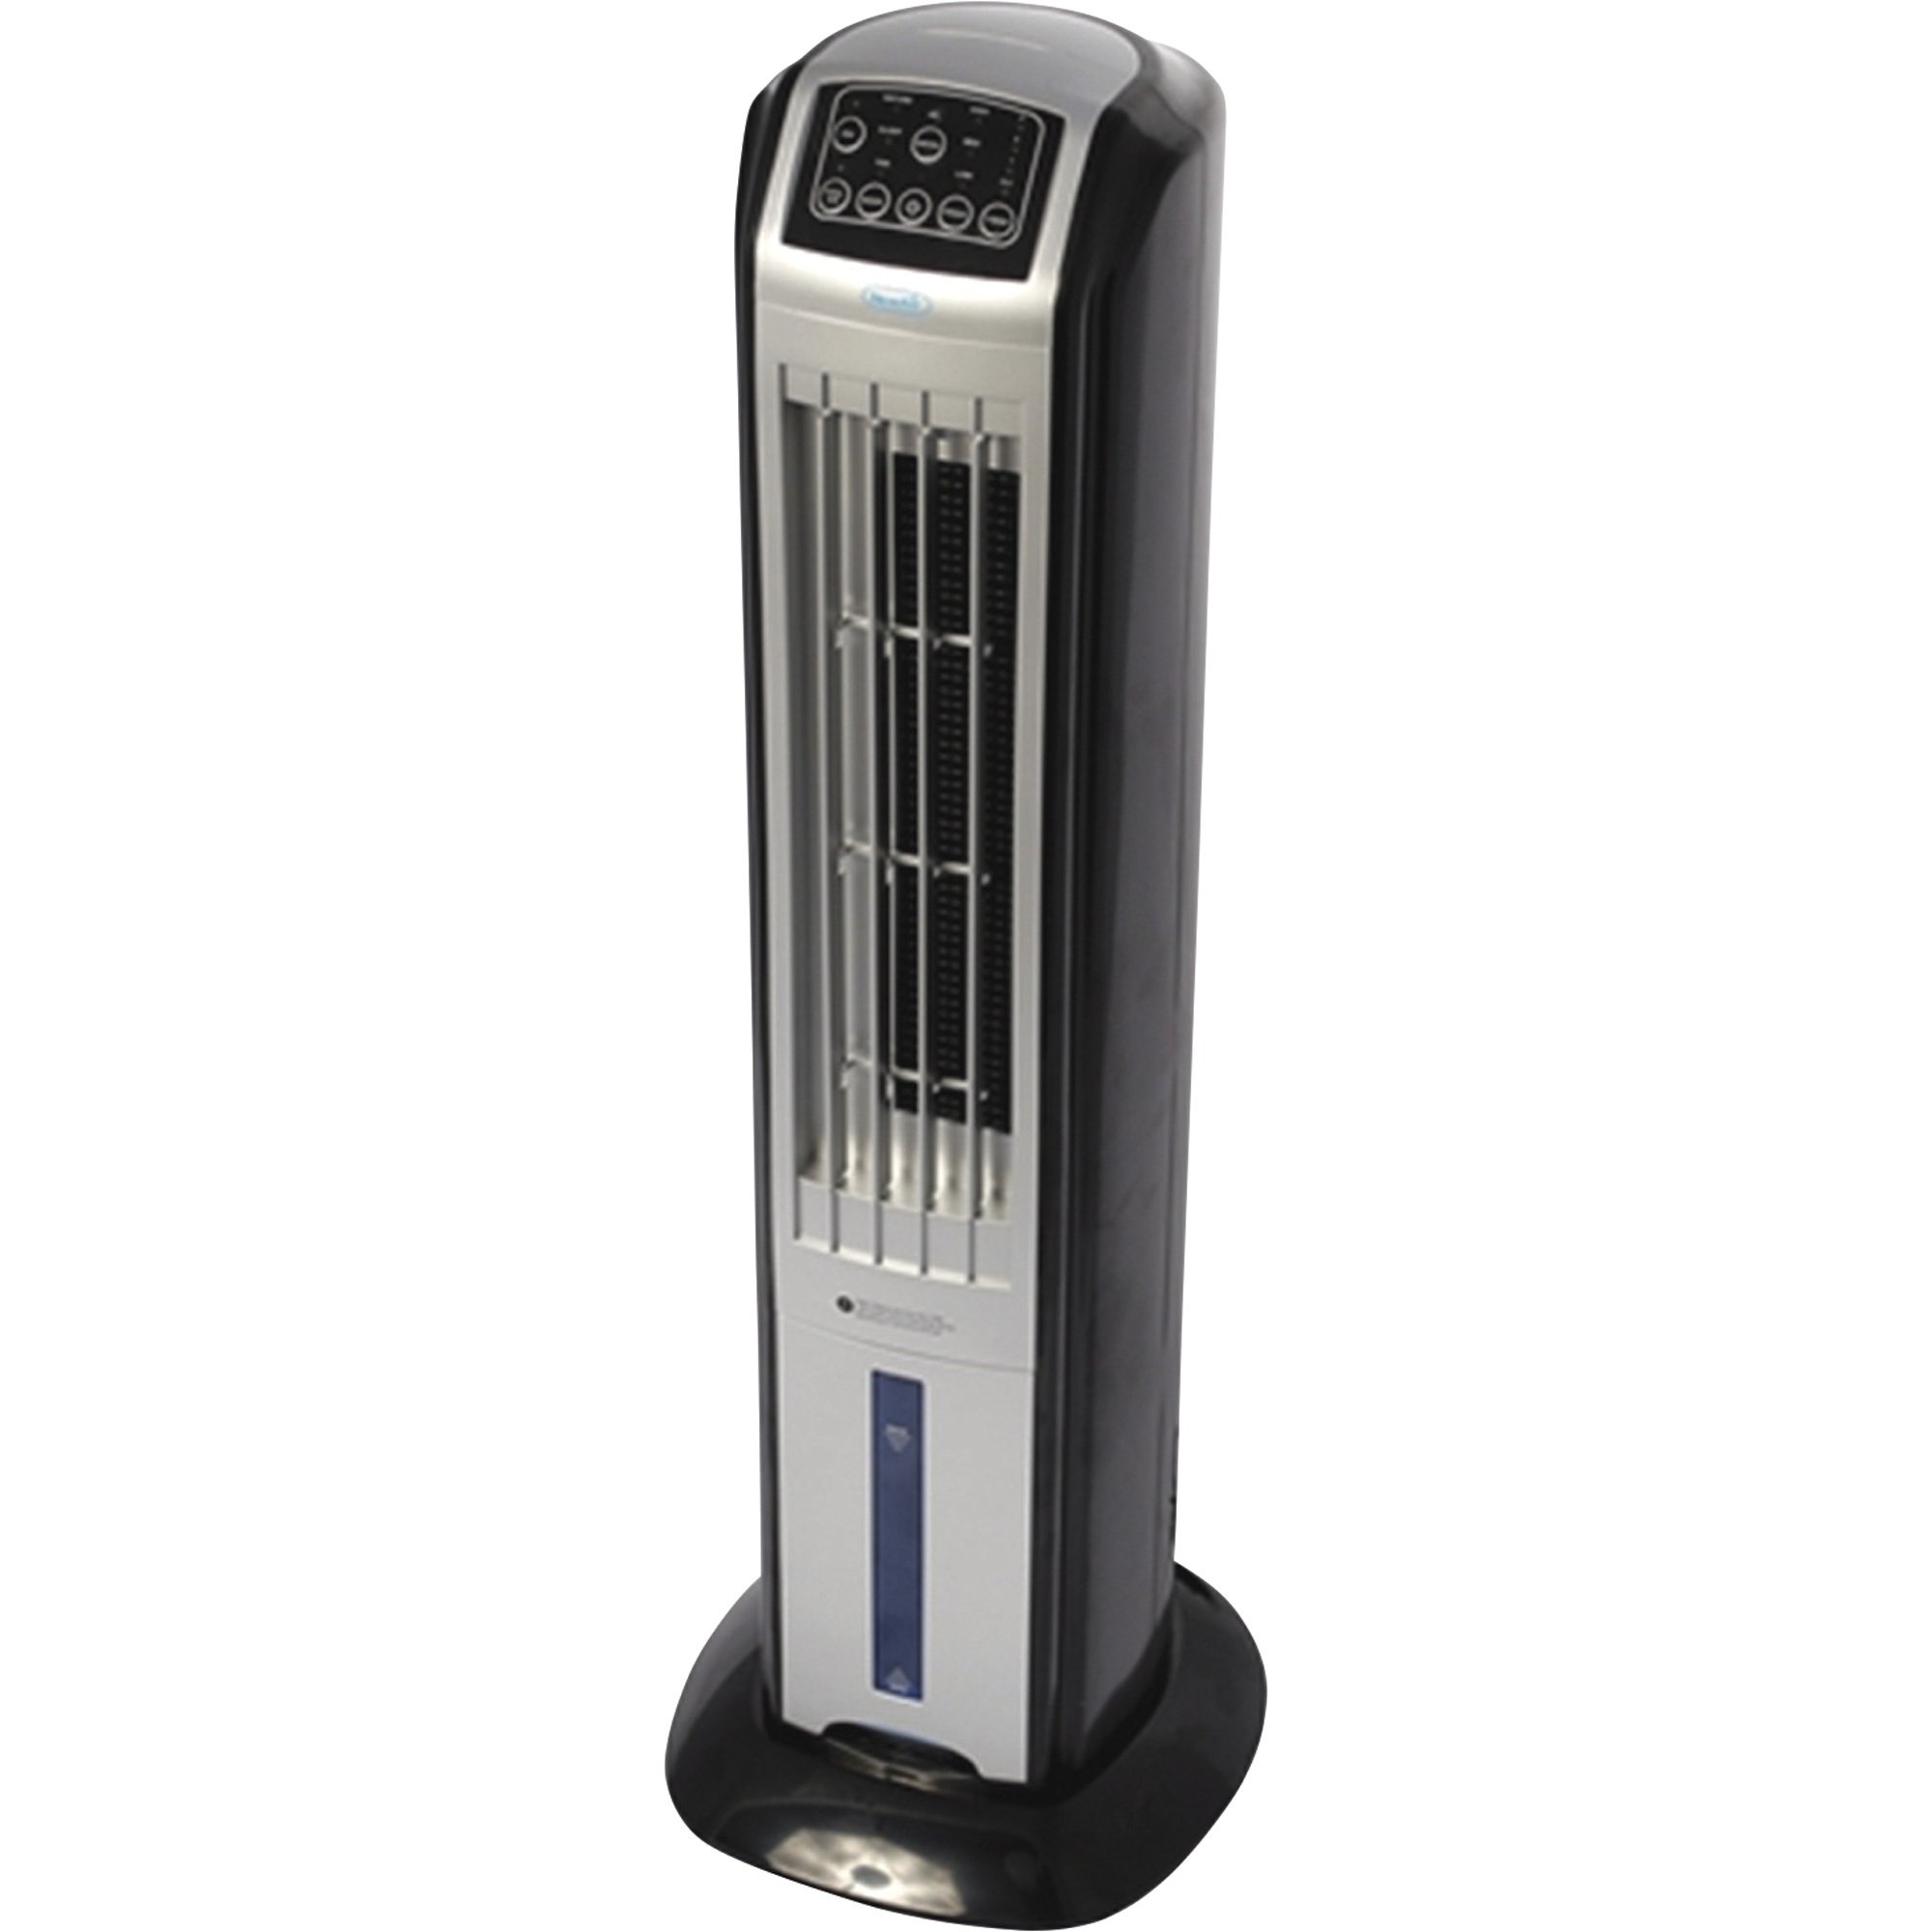 Вентилятор с охлаждением воздуха для квартиры. Охладитель воздуха с системой увлажнения Keno sy-2619. Напольный кондиционер с увлажнителем воздуха Vitek. Air Cooler Fan увлажнитель воздуха. Вентилятор Оазис с увлажнителем воздуха.